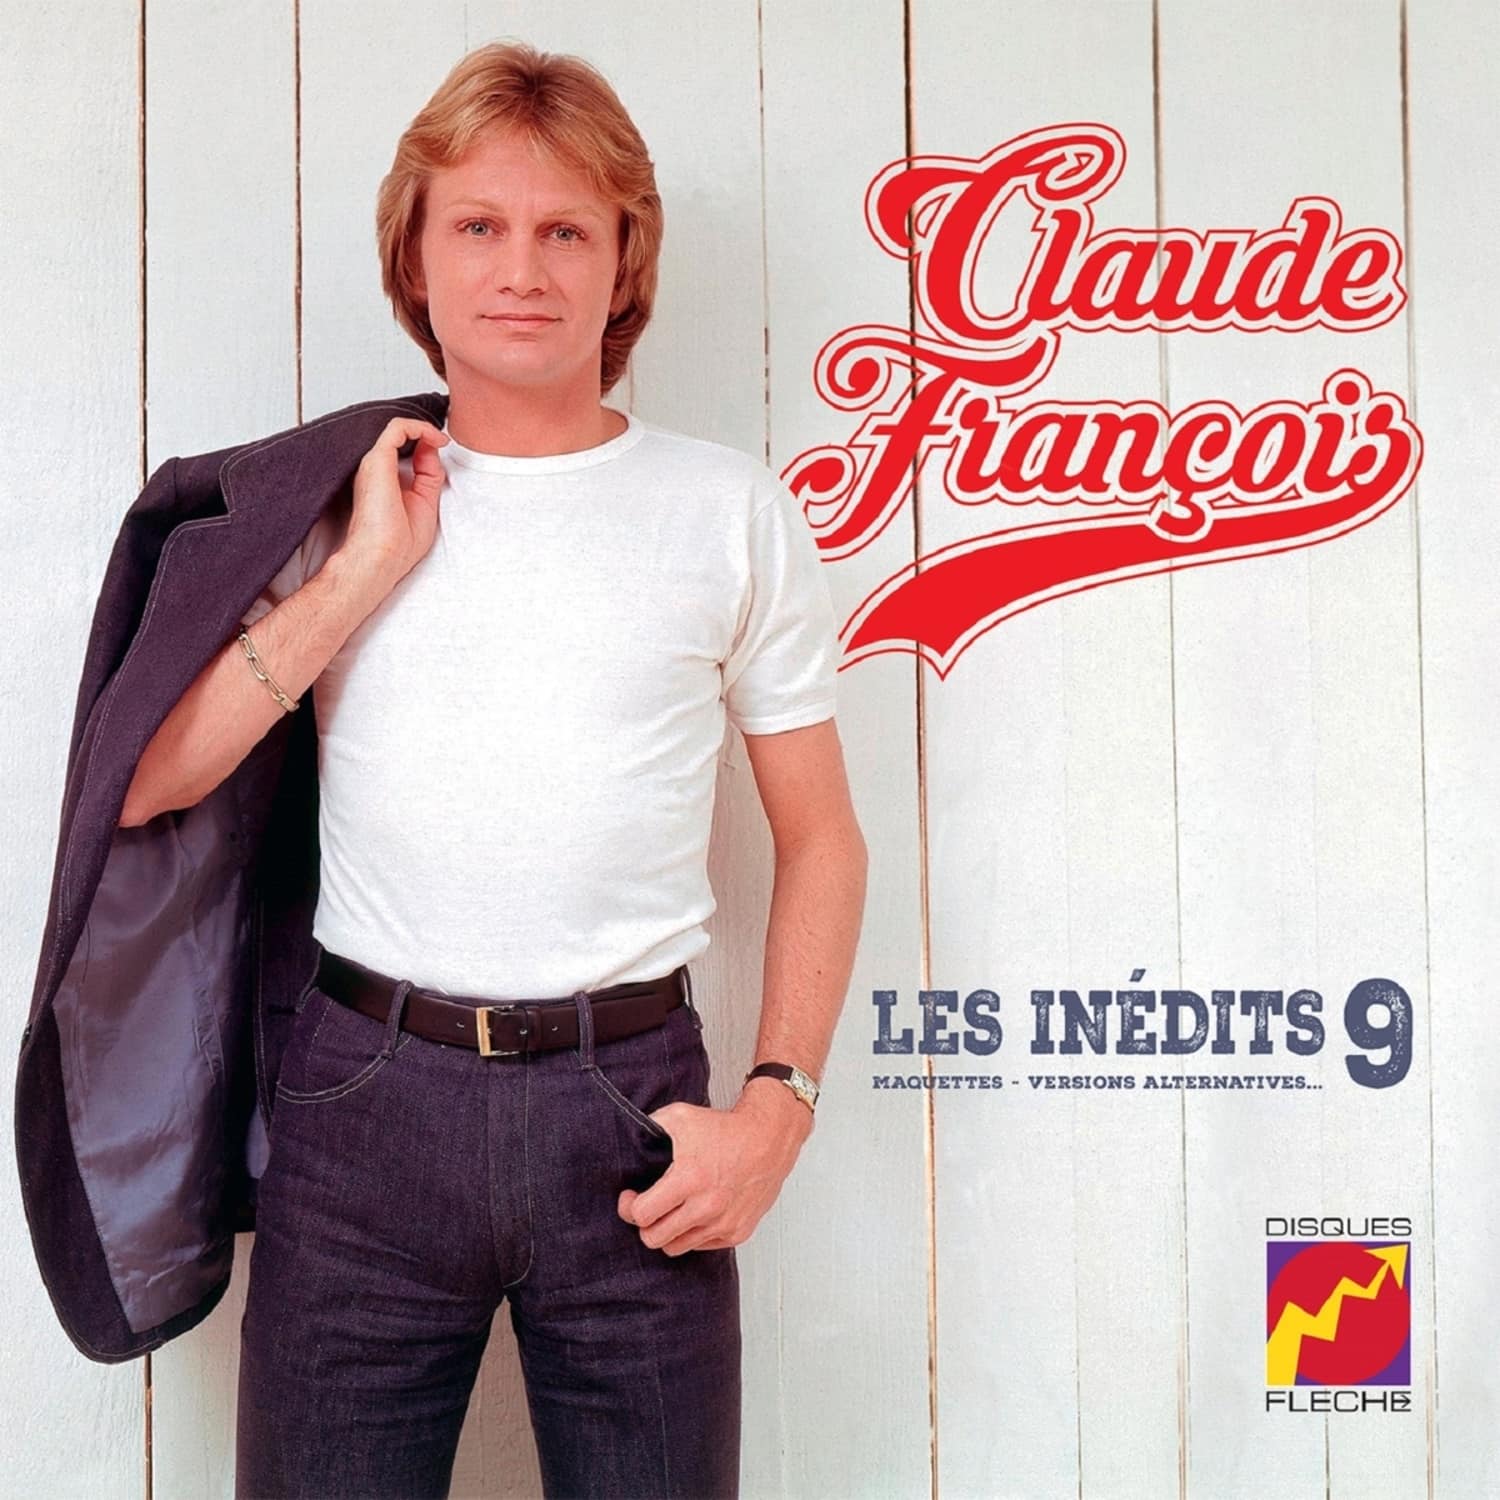 Claude Francois - LES INEDITS 9